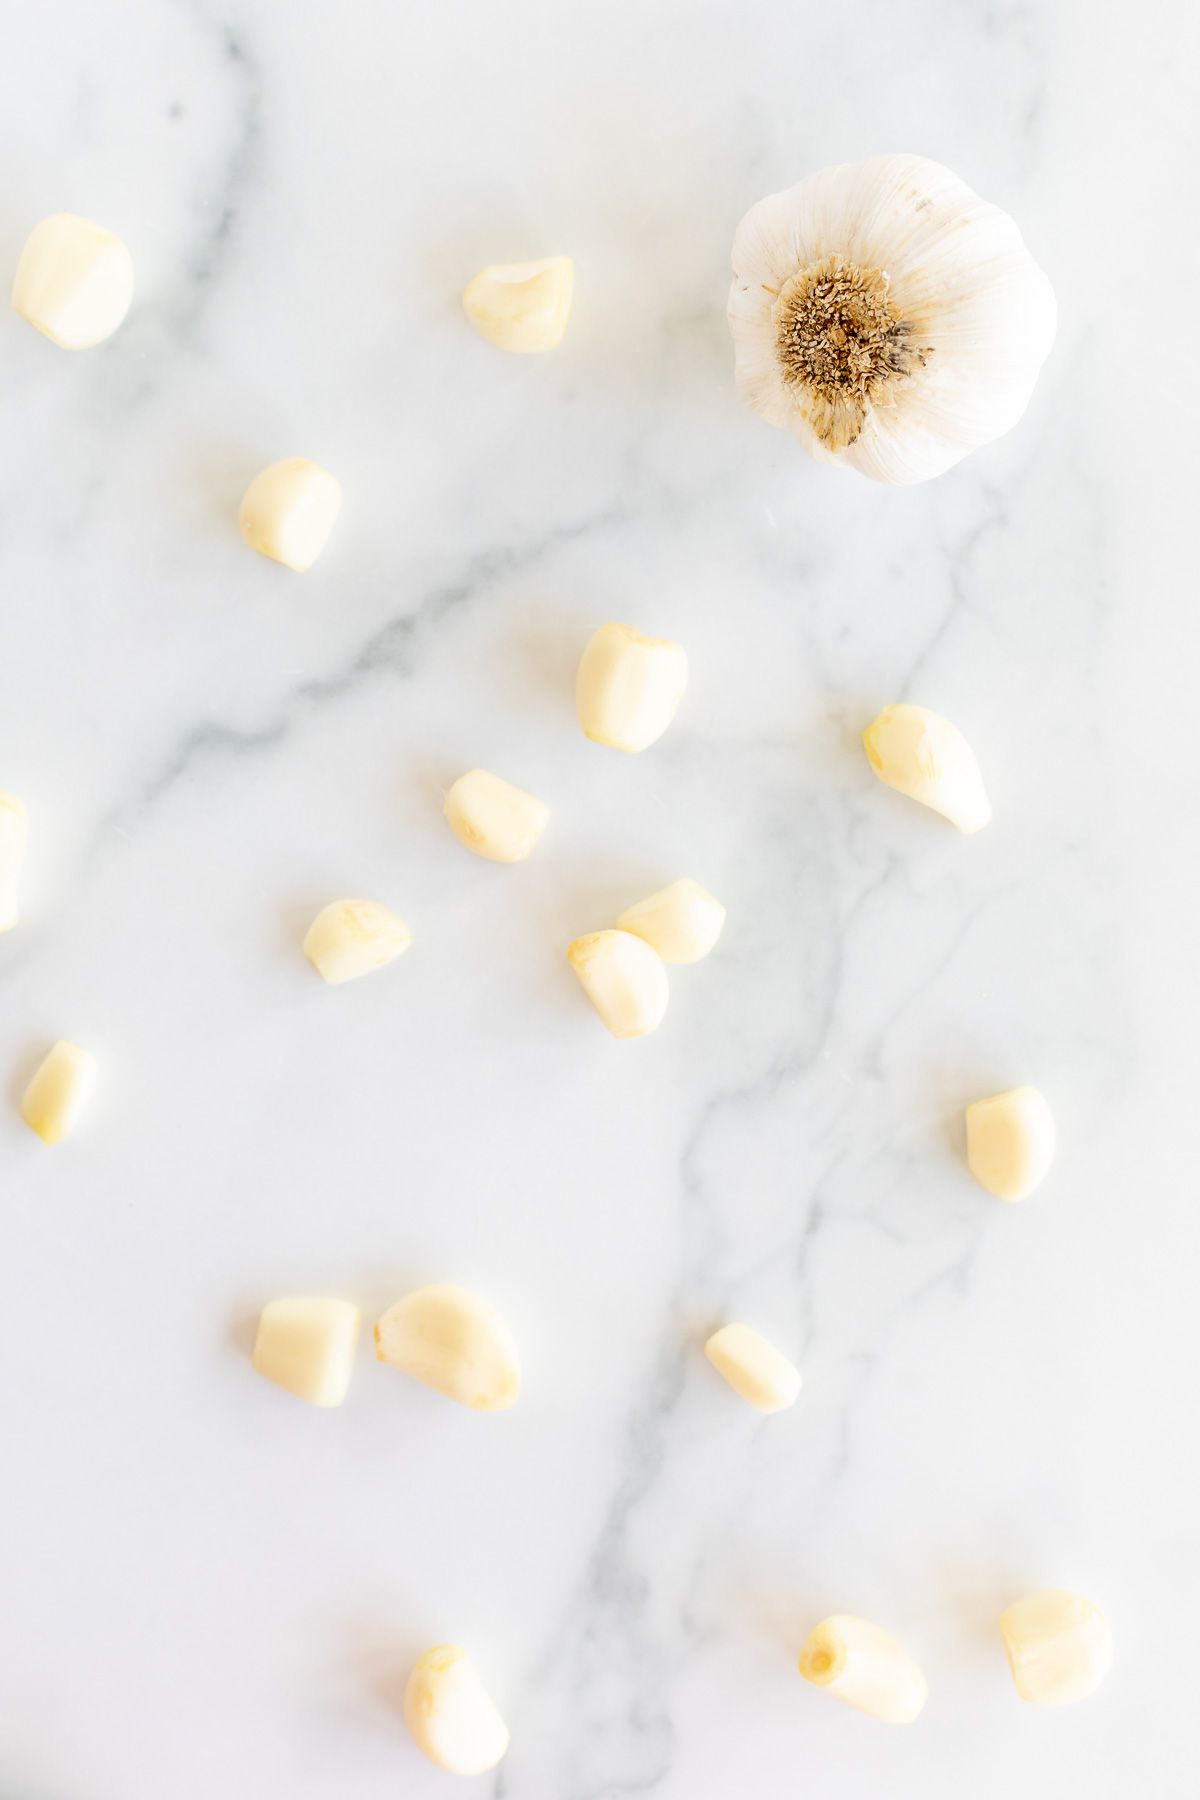 A single head of garlic and more garlic cloves open onto a marble countertop. 